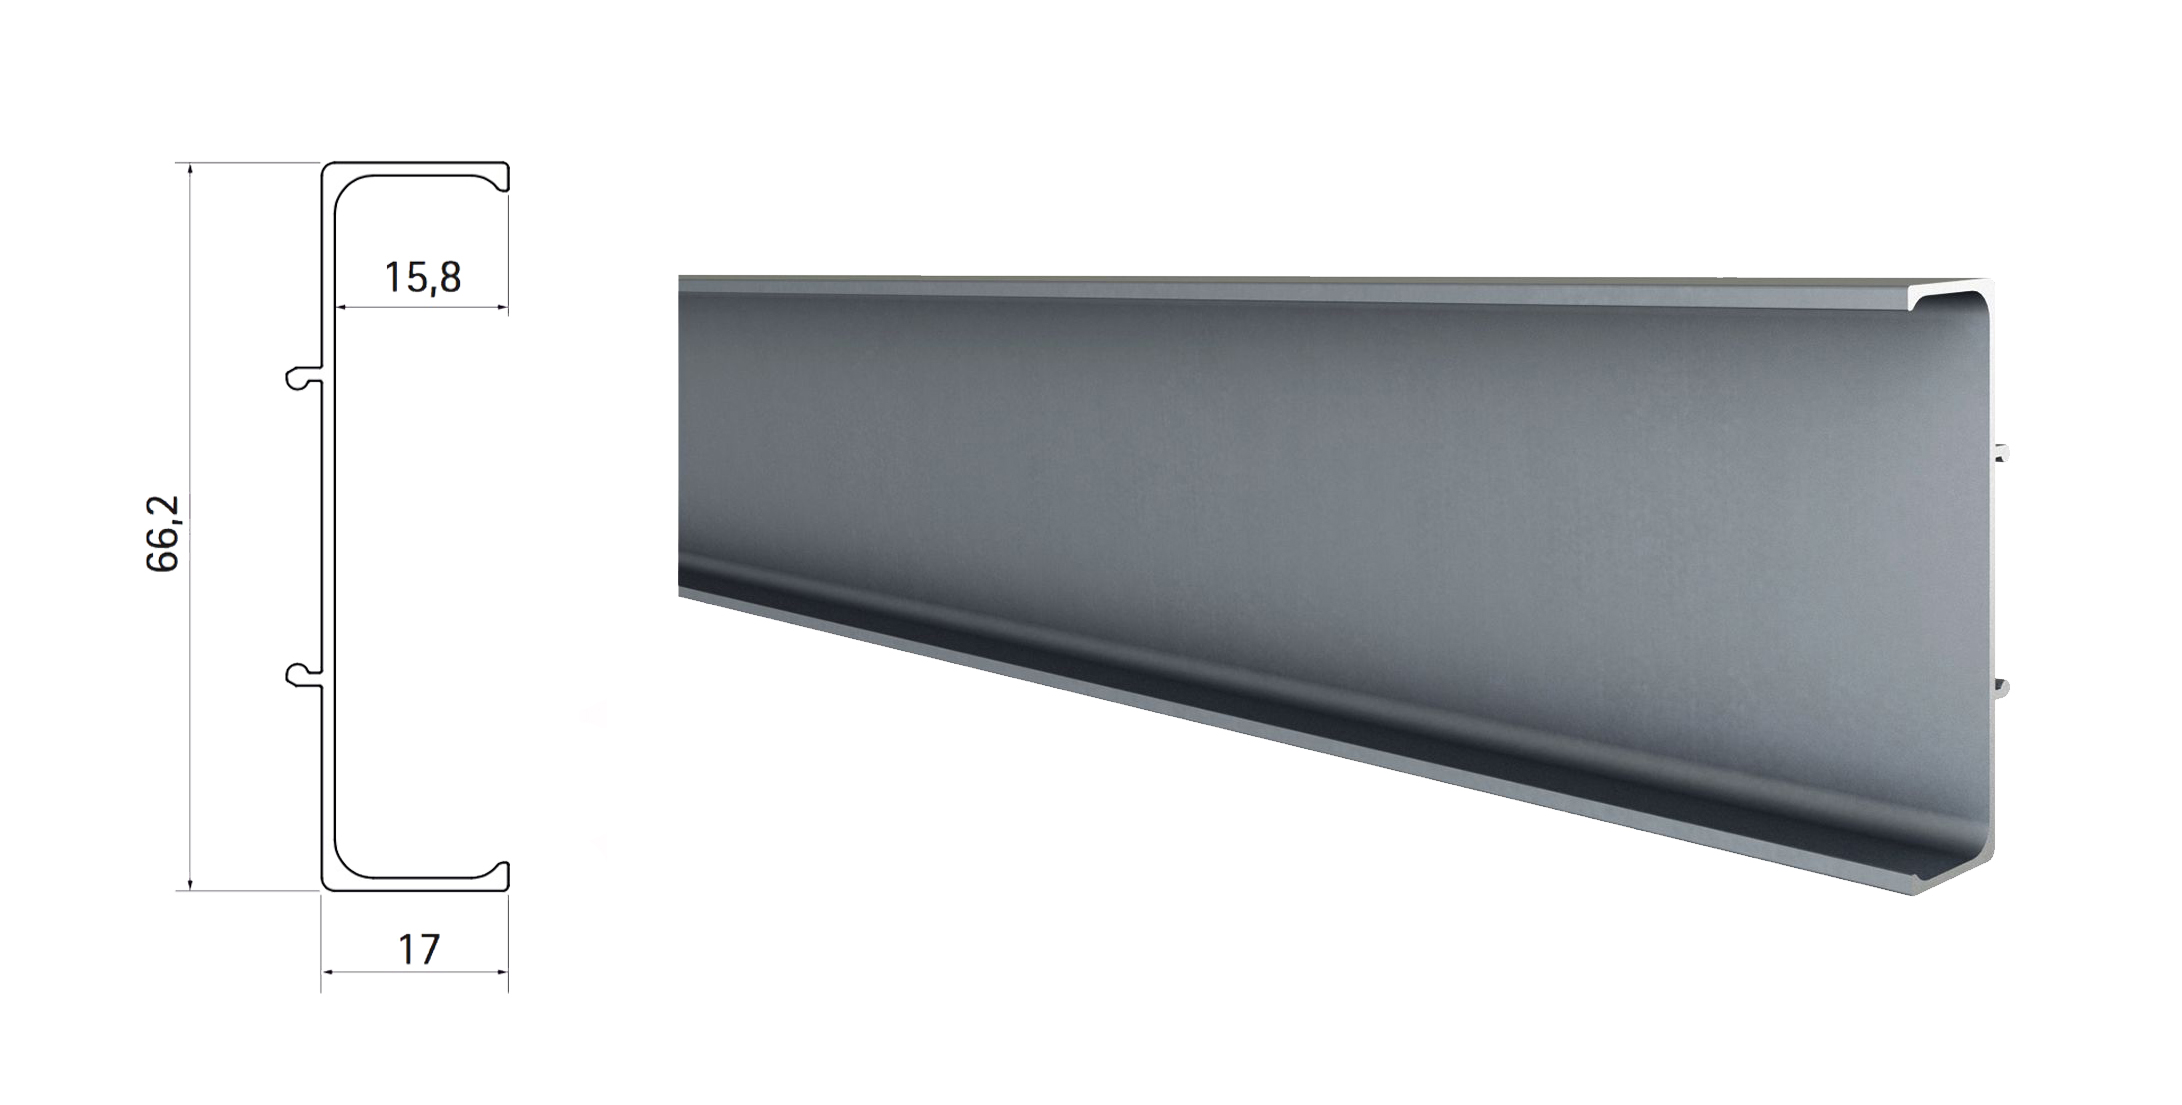 Profilo angolare alluminio bianco 25x25 mm (2 metri) - GUARNIZIONI,  PERSIANE E PROFILI - - 8013237853143